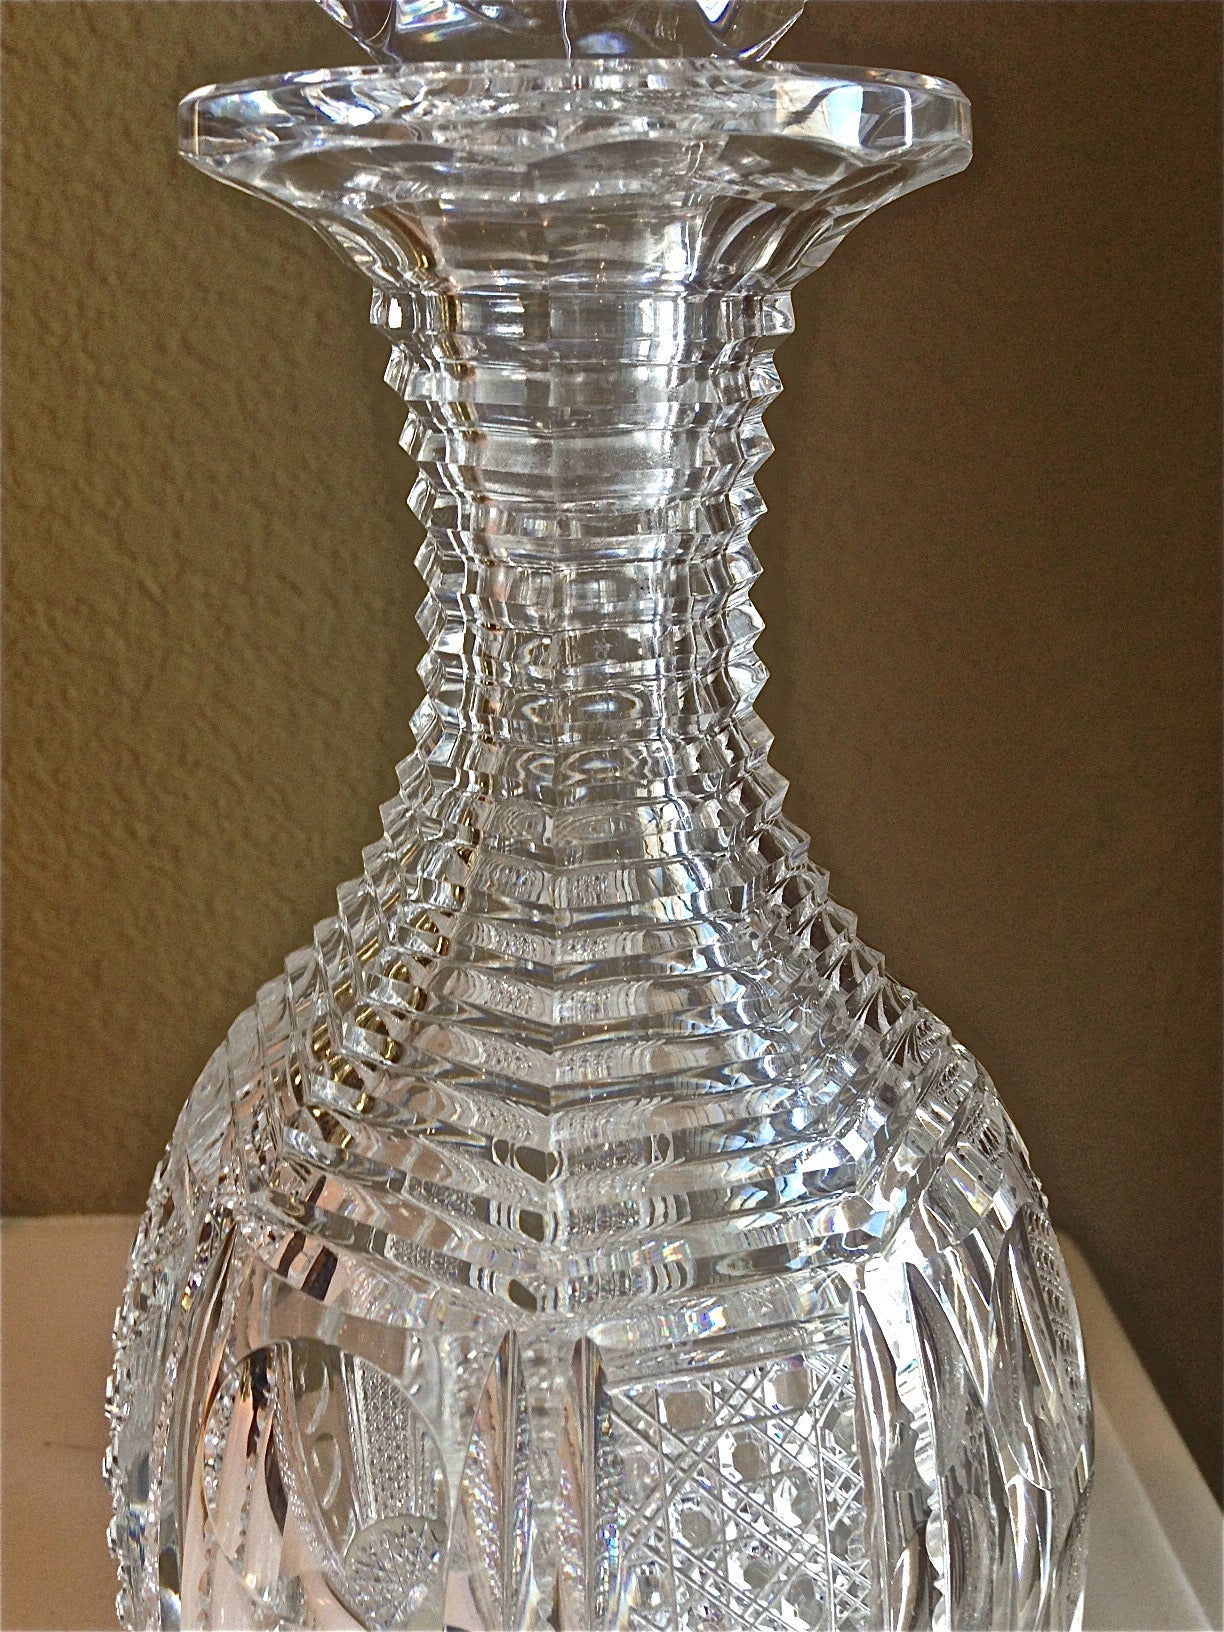 dorflinger glass for sale